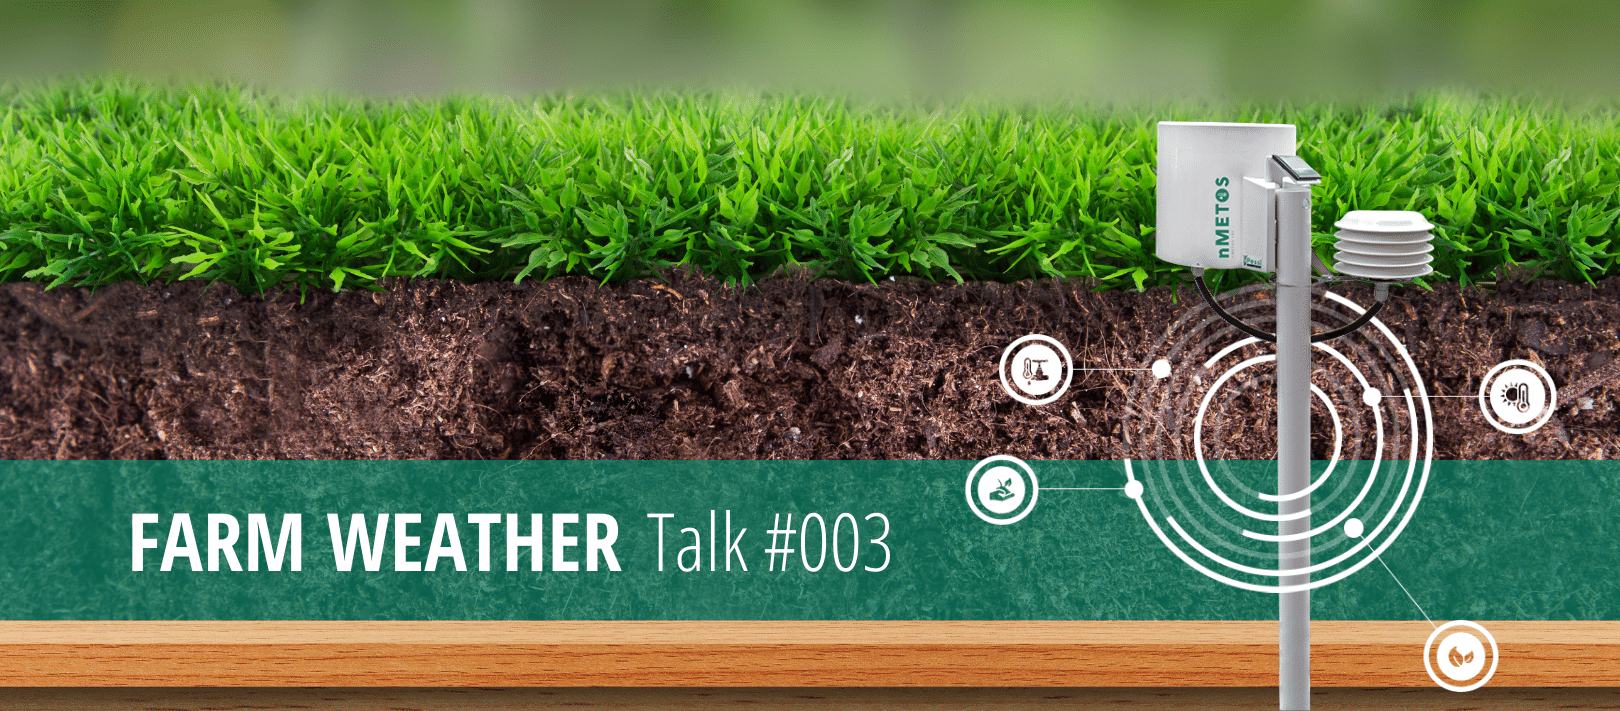 Farm Weather Talk #003